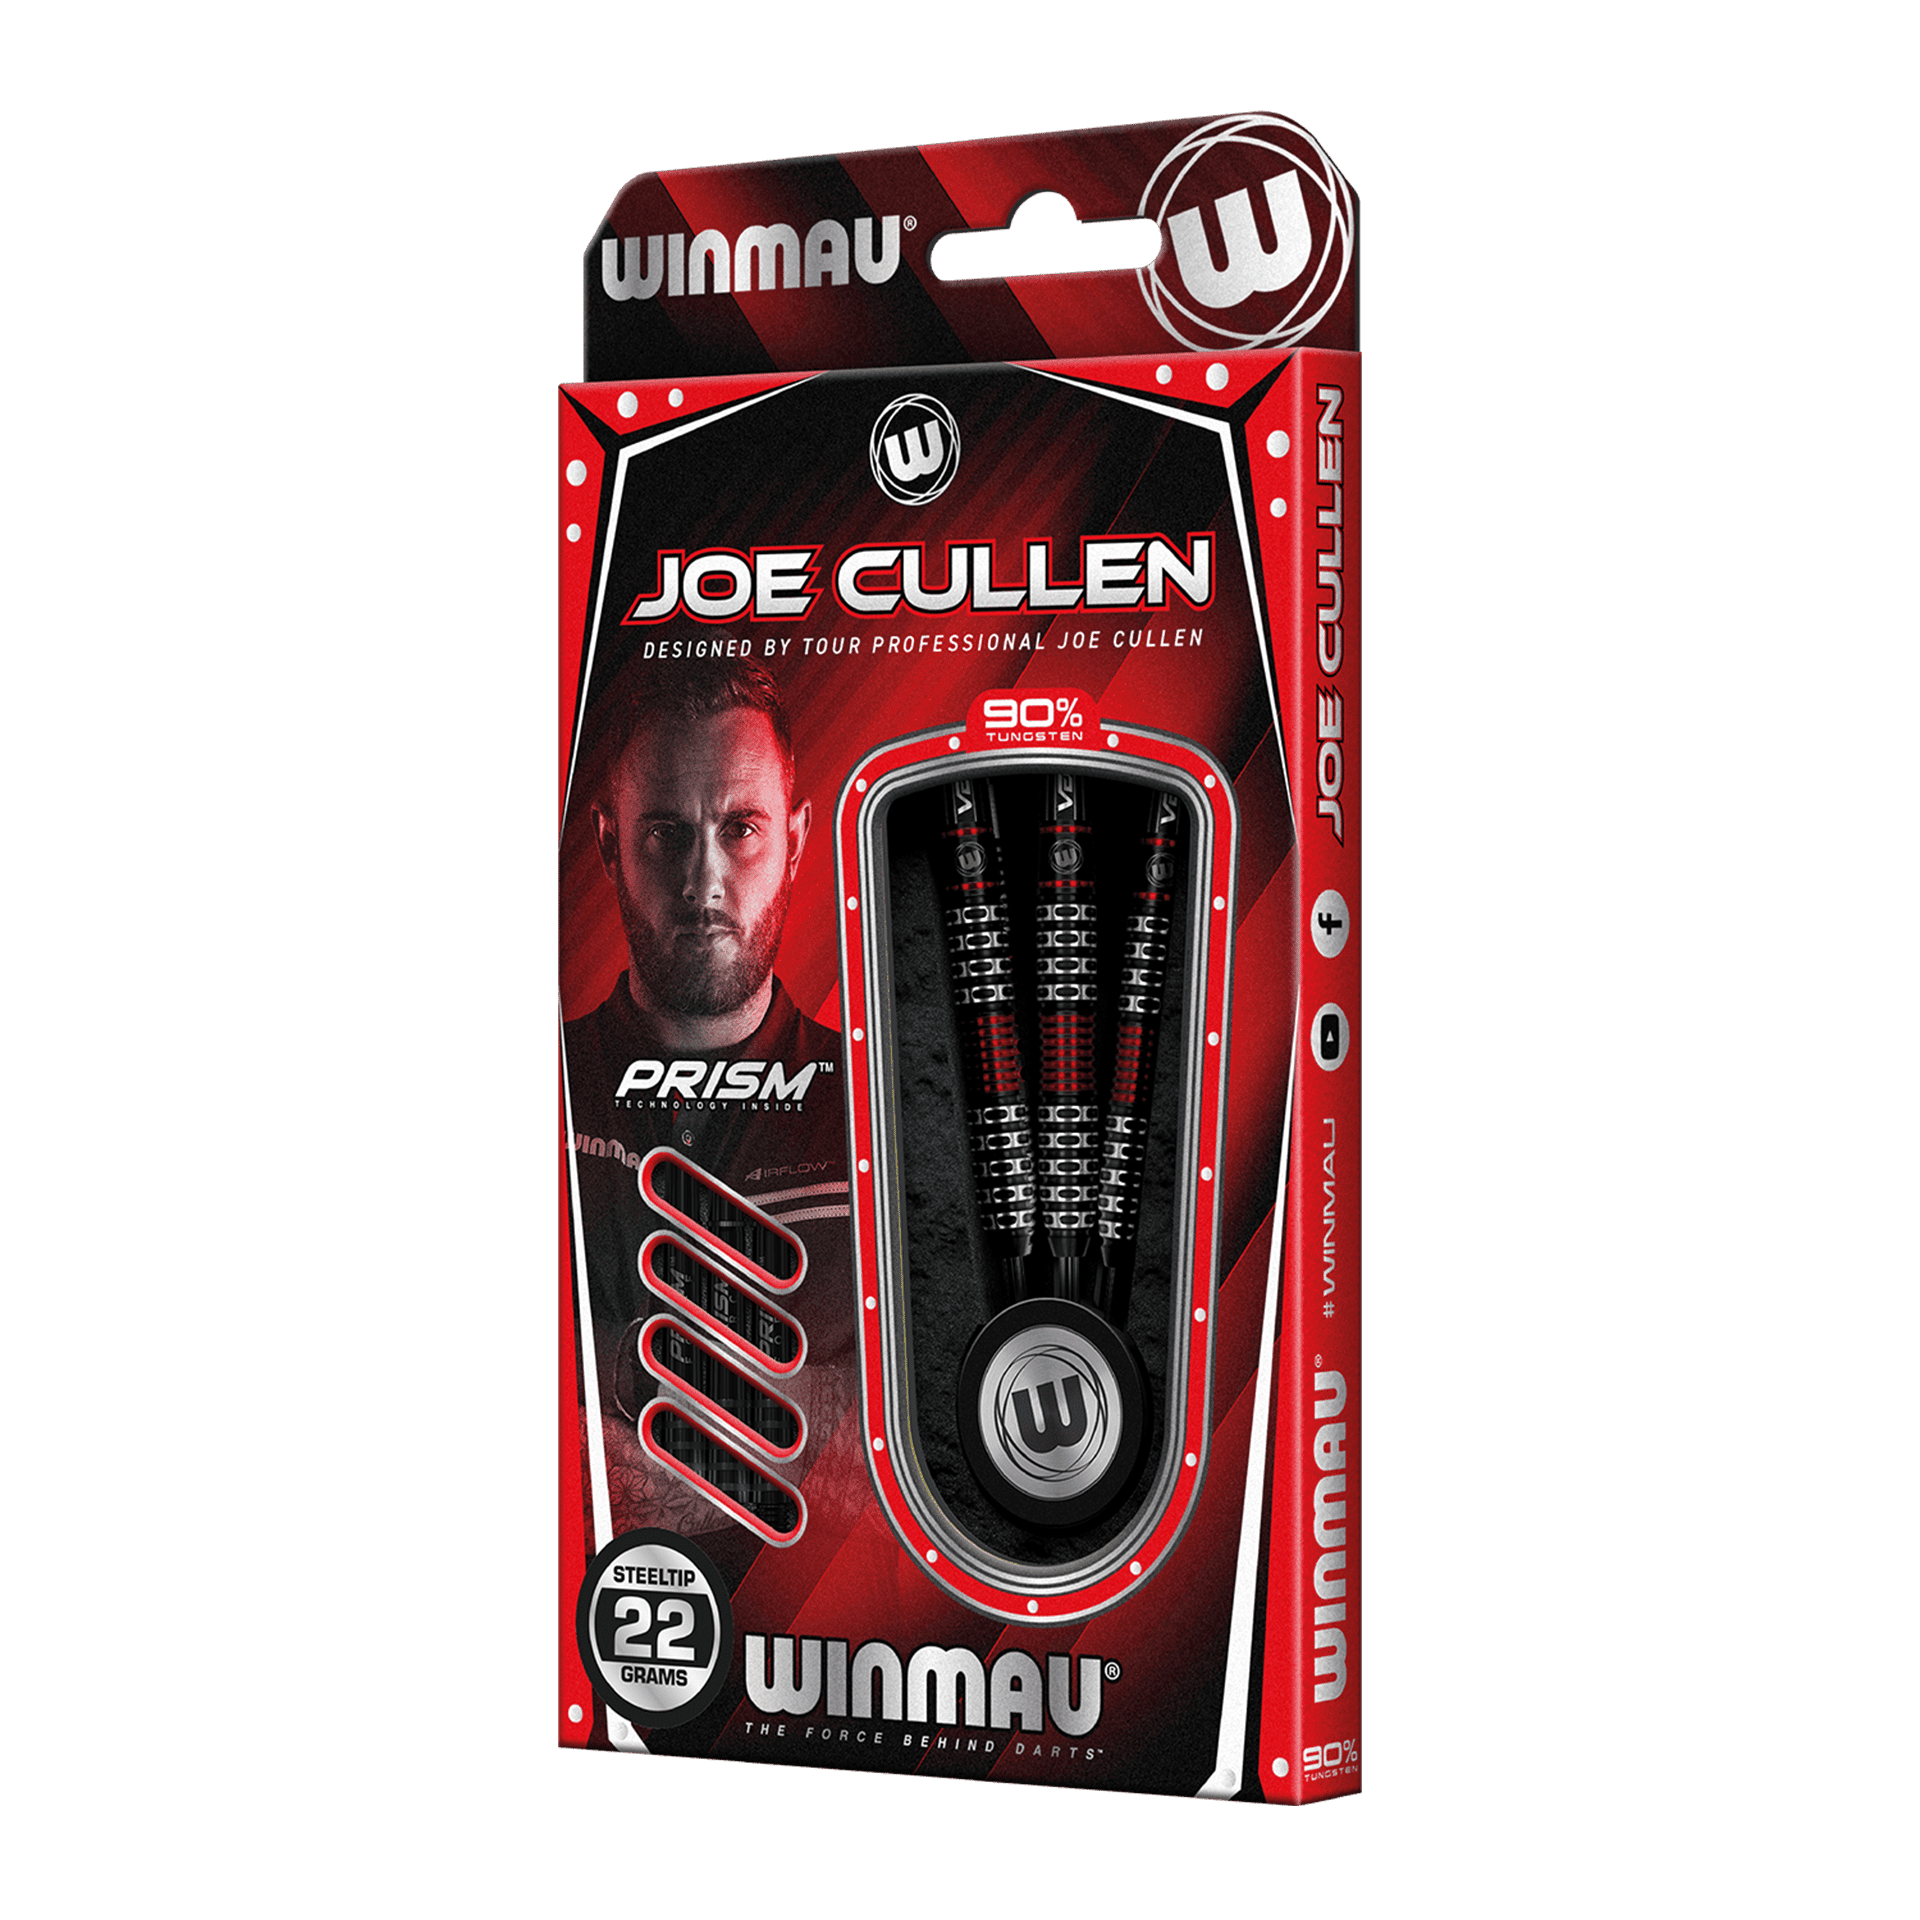 Winmau Joe Cullen Special Edition Steeldarts